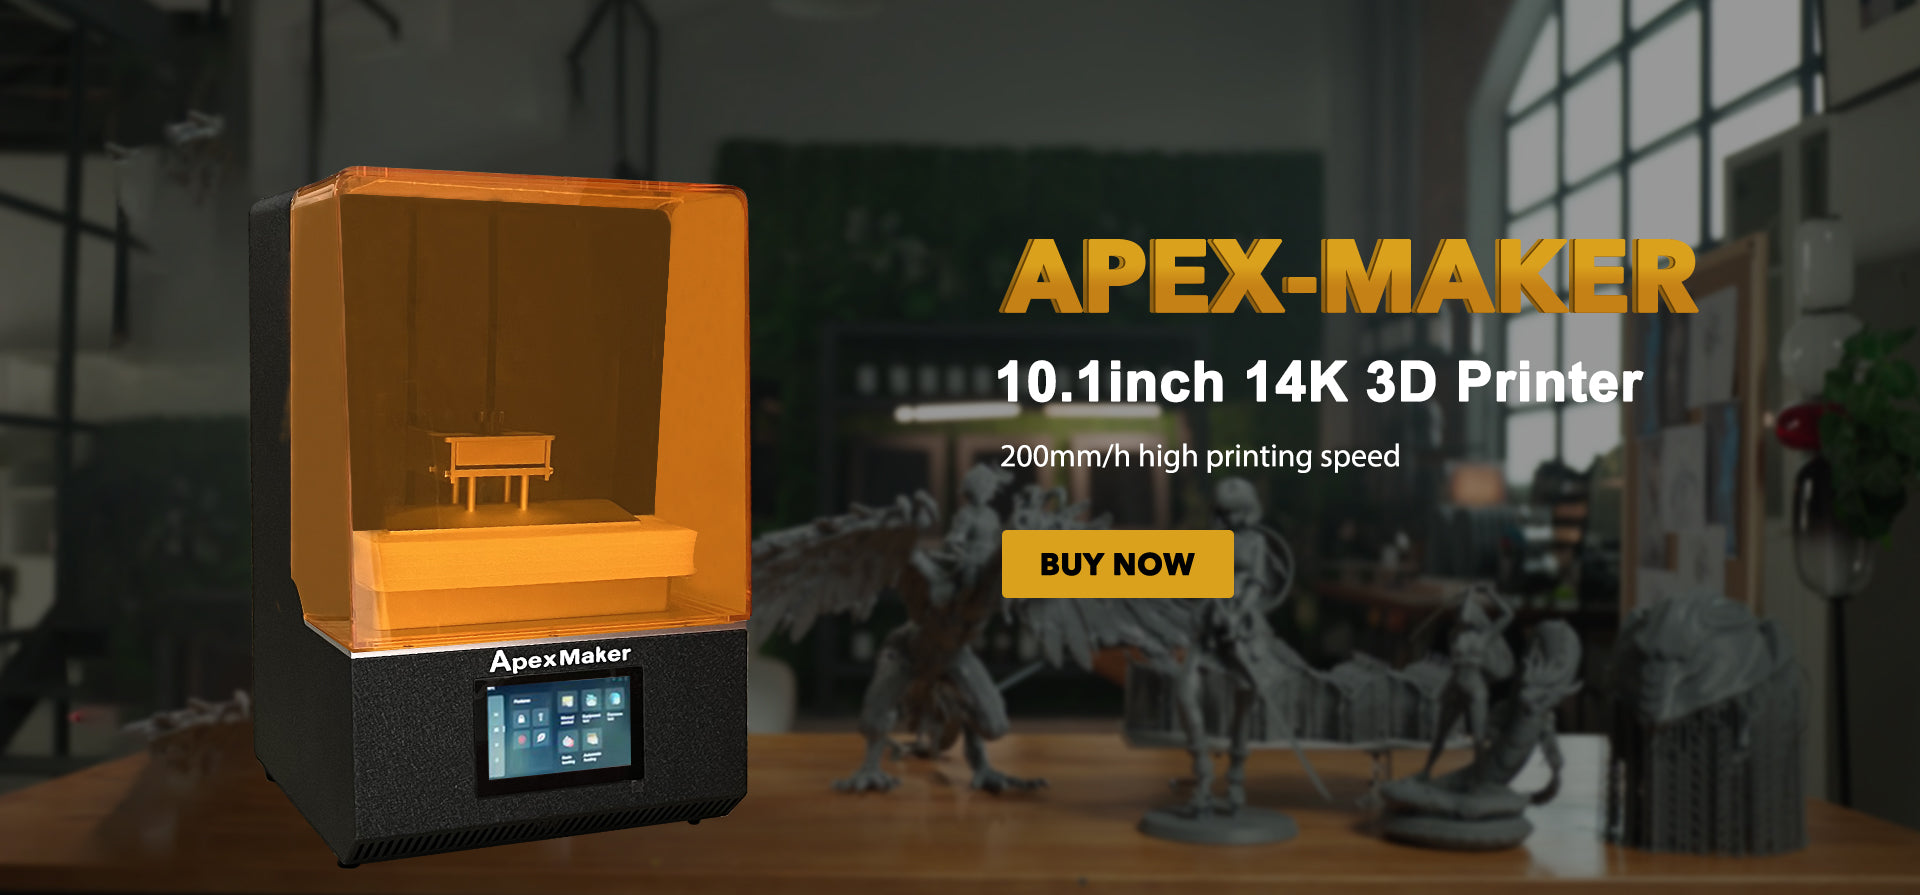 ApexMaker X1 : que vaut cette impressionnante imprimante 3D résine ?